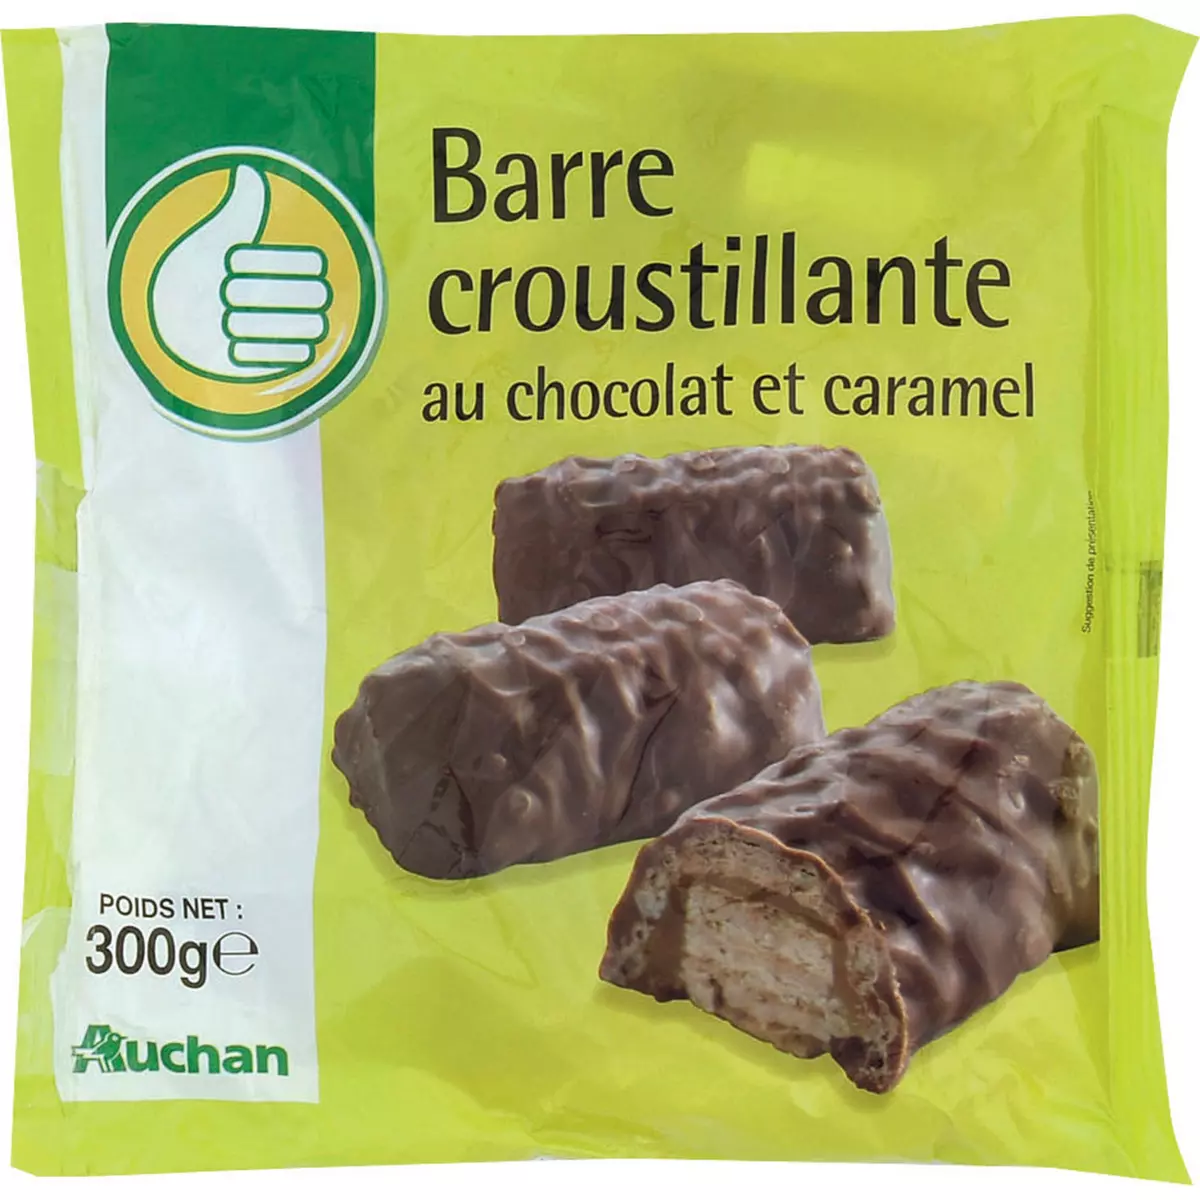 POUCE Barre croustillante au chocolat et caramel 300g